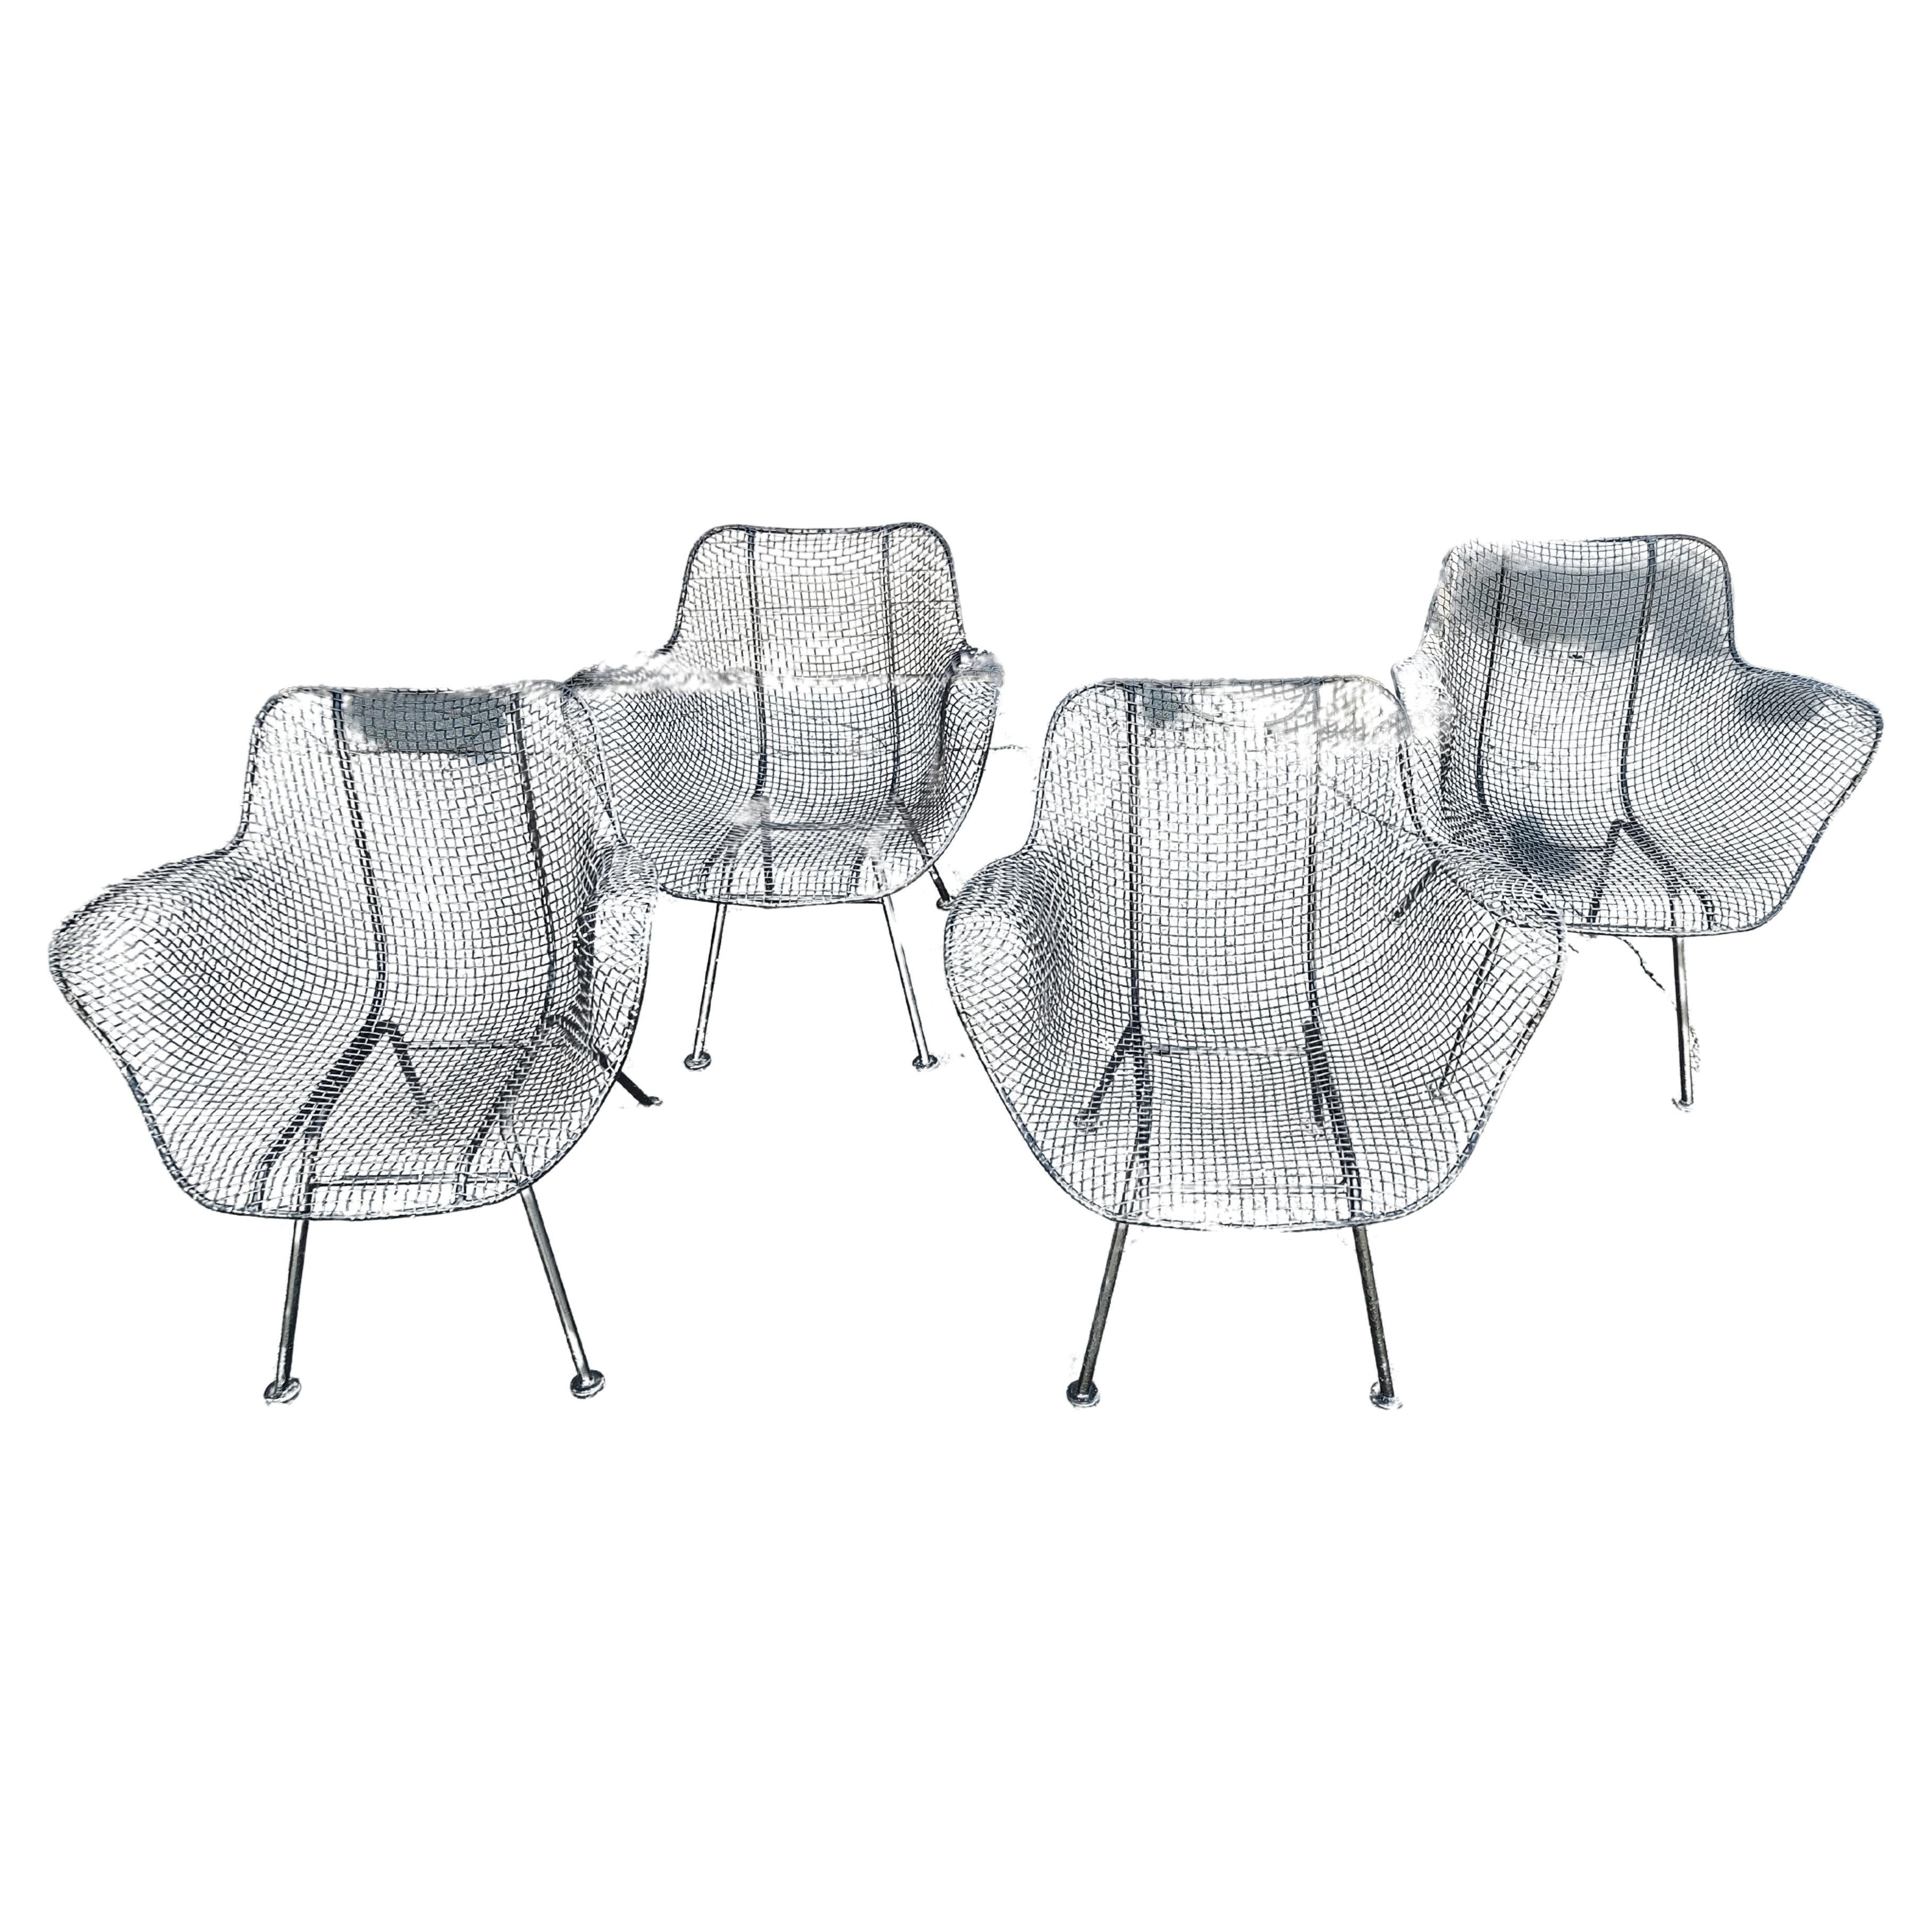 Fabuleux et iconique ensemble de 4 fauteuils Sculptura dessinés par Russell Woodard en noir. Très confortable et bien sûr très agréable à l'œil.  En excellent état vintage avec une usure minimale, la peinture a besoin d'une retouche sur les 4. Nous